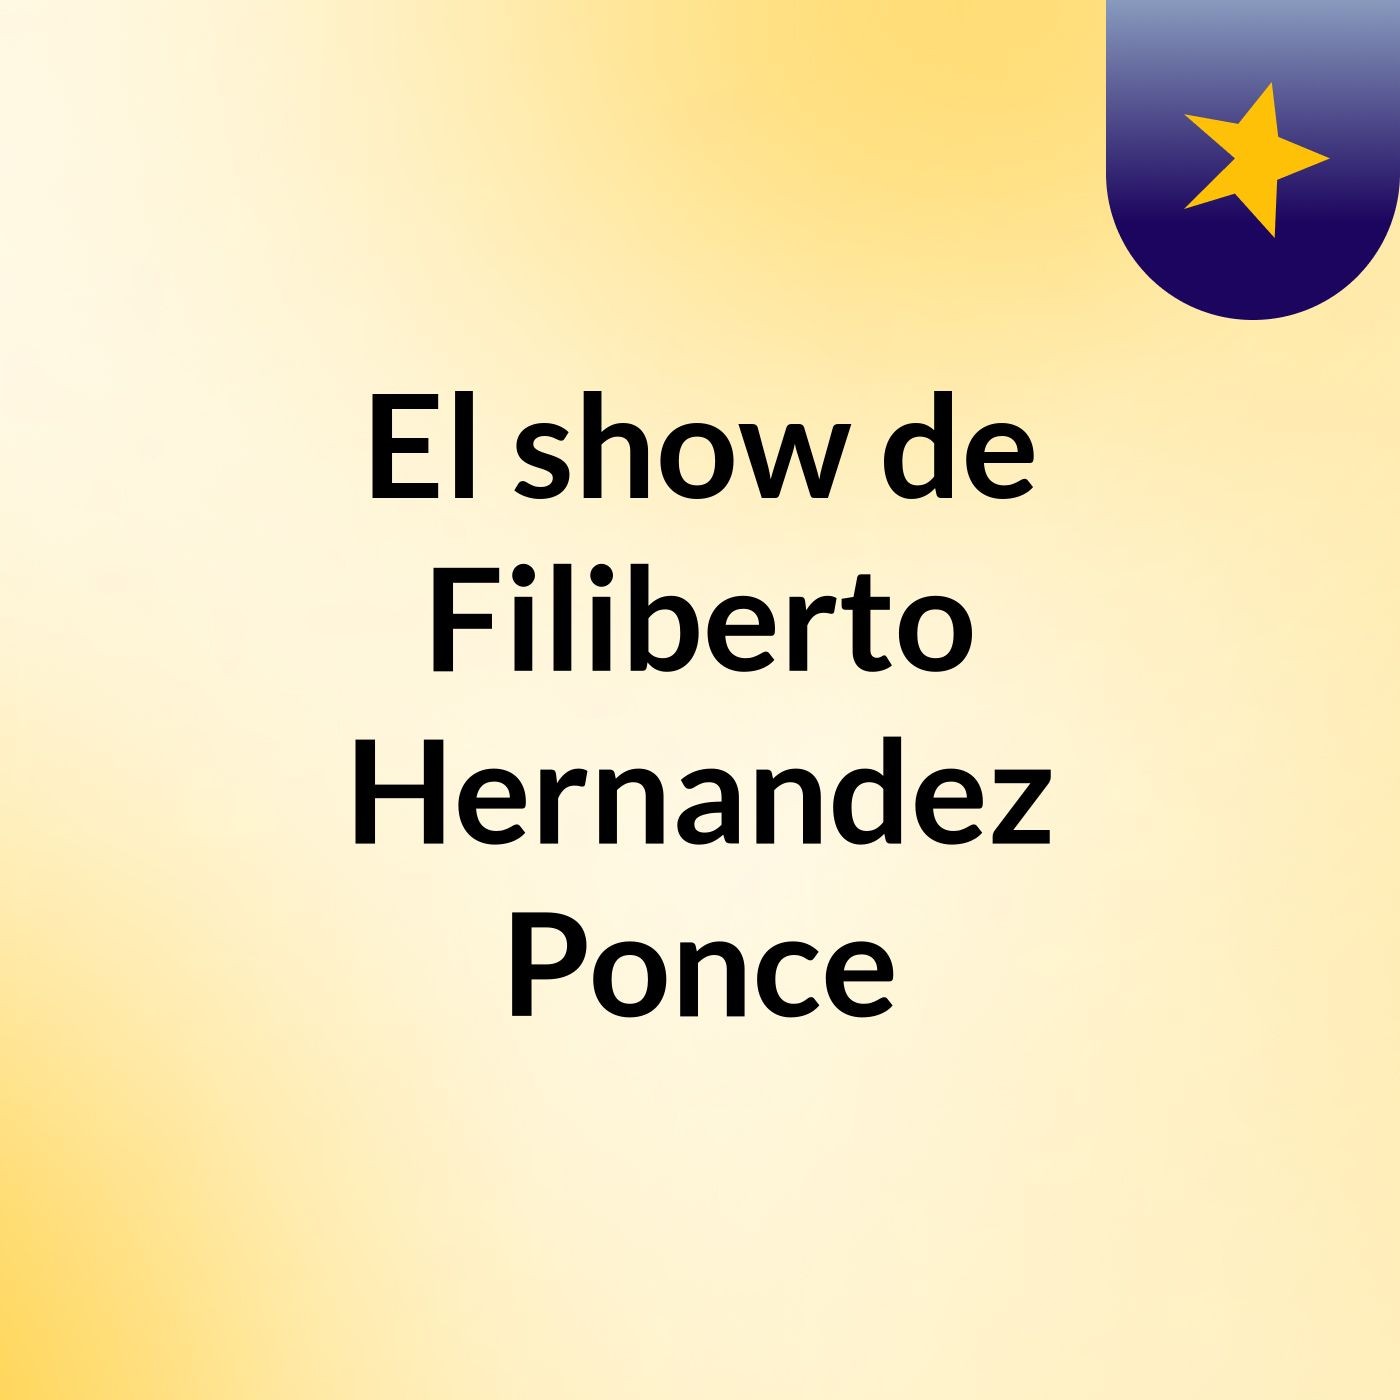 El show de Filiberto Hernandez Ponce